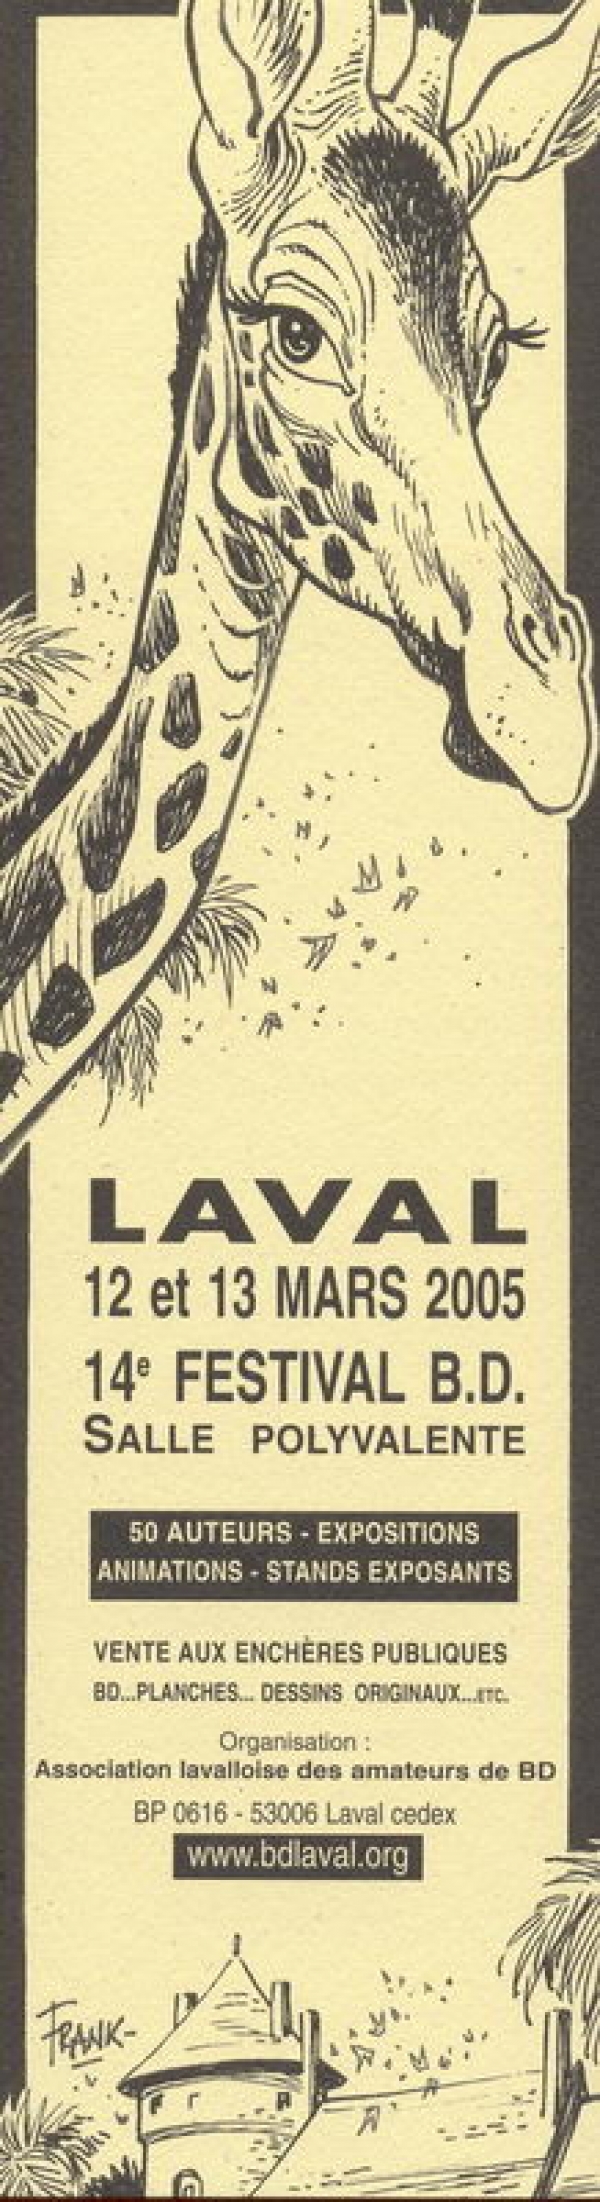 14° festival de BD de Laval